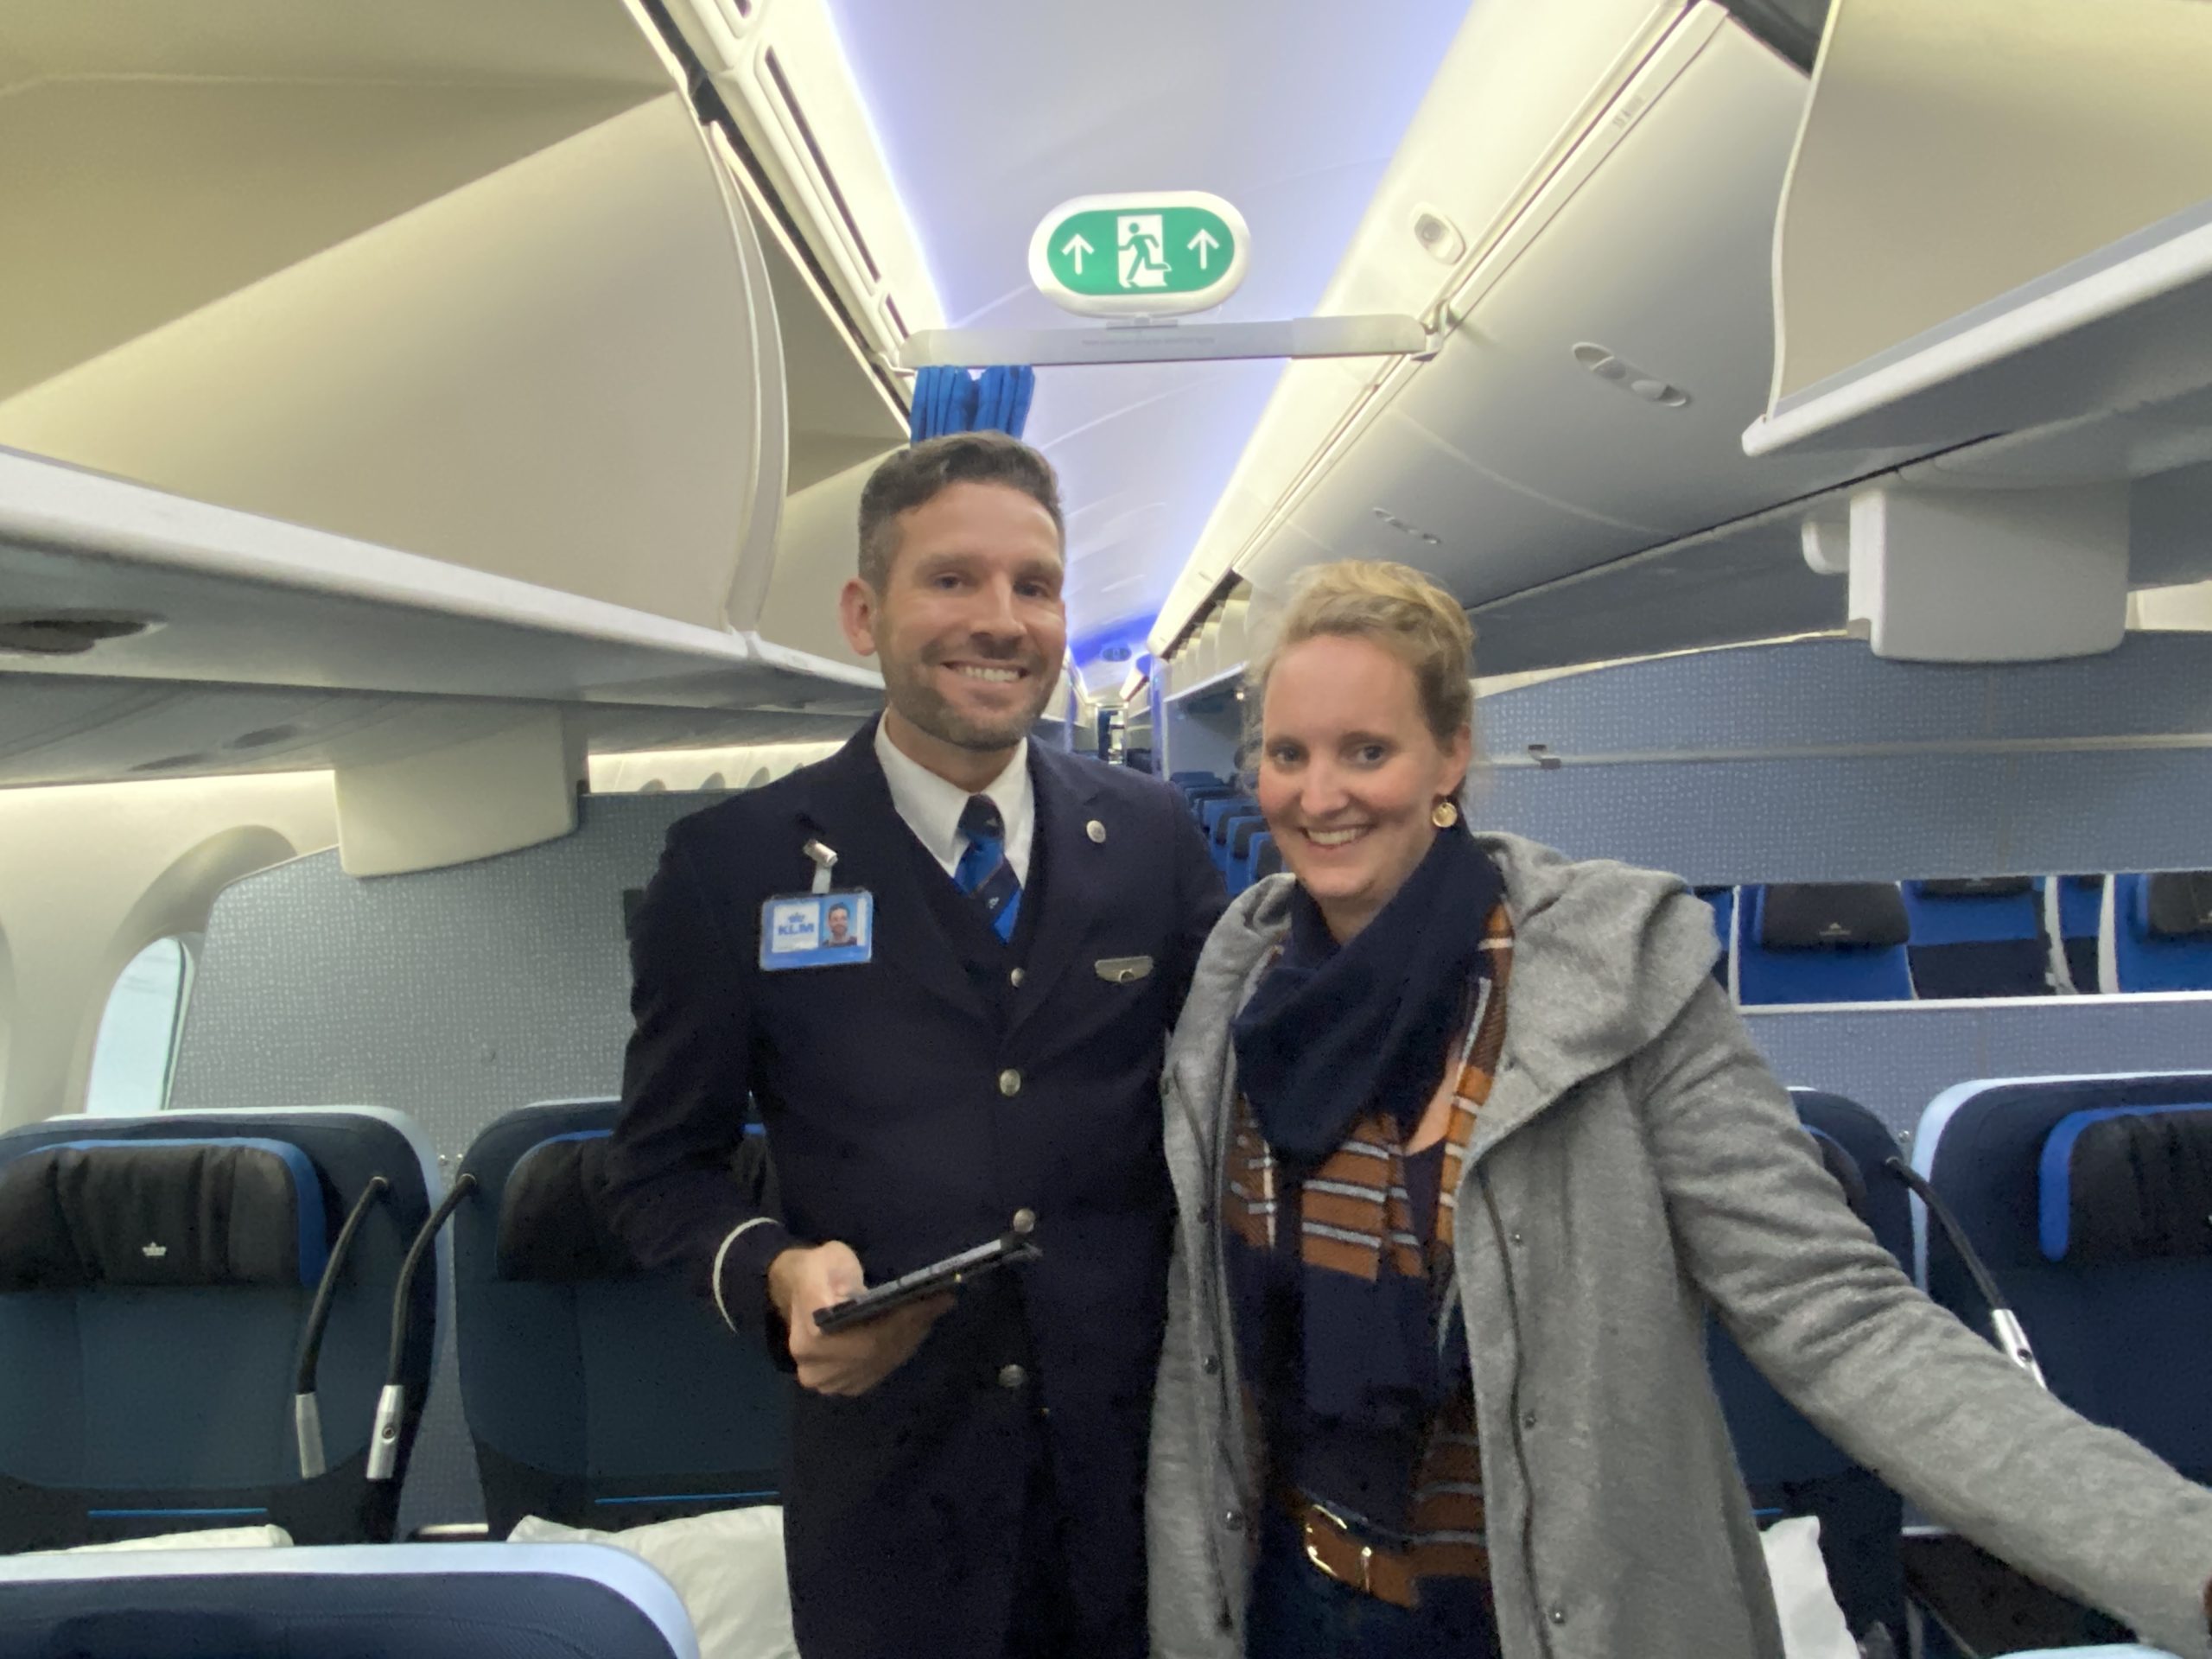 Auf dem Flug von Amsterdam nach New York teste ich, Online-Chefredakteurin Isabella Sauer, die neue Premium Comfort Class in einer Boeing 787-10. Hier auf dem Foto mit Flugbegleiter Frank.